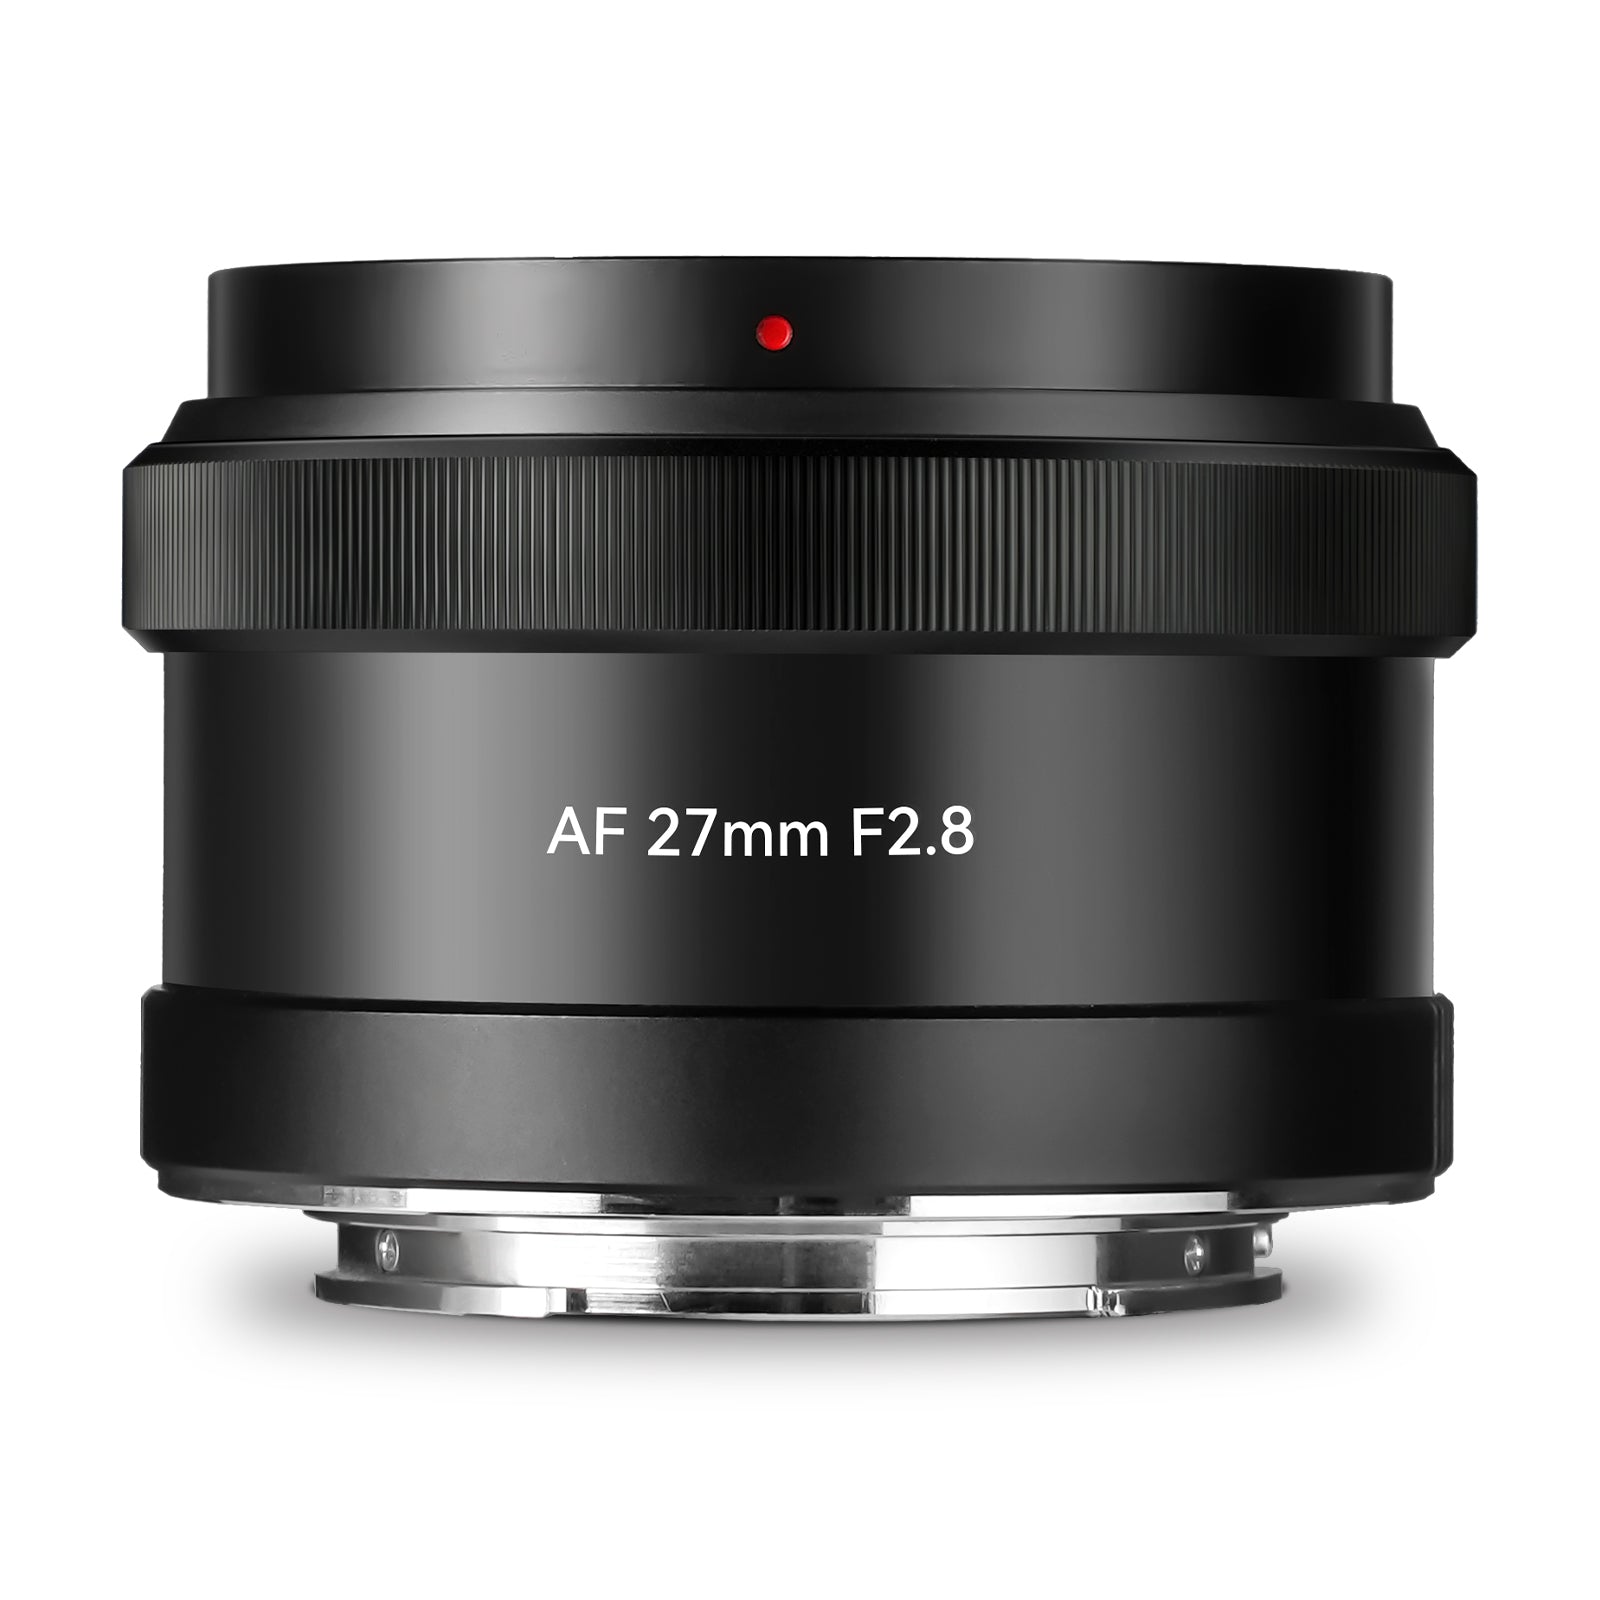 7Artisans AF 27mm F2.8 APS-C Large Aperture Lens for Sony E Mount